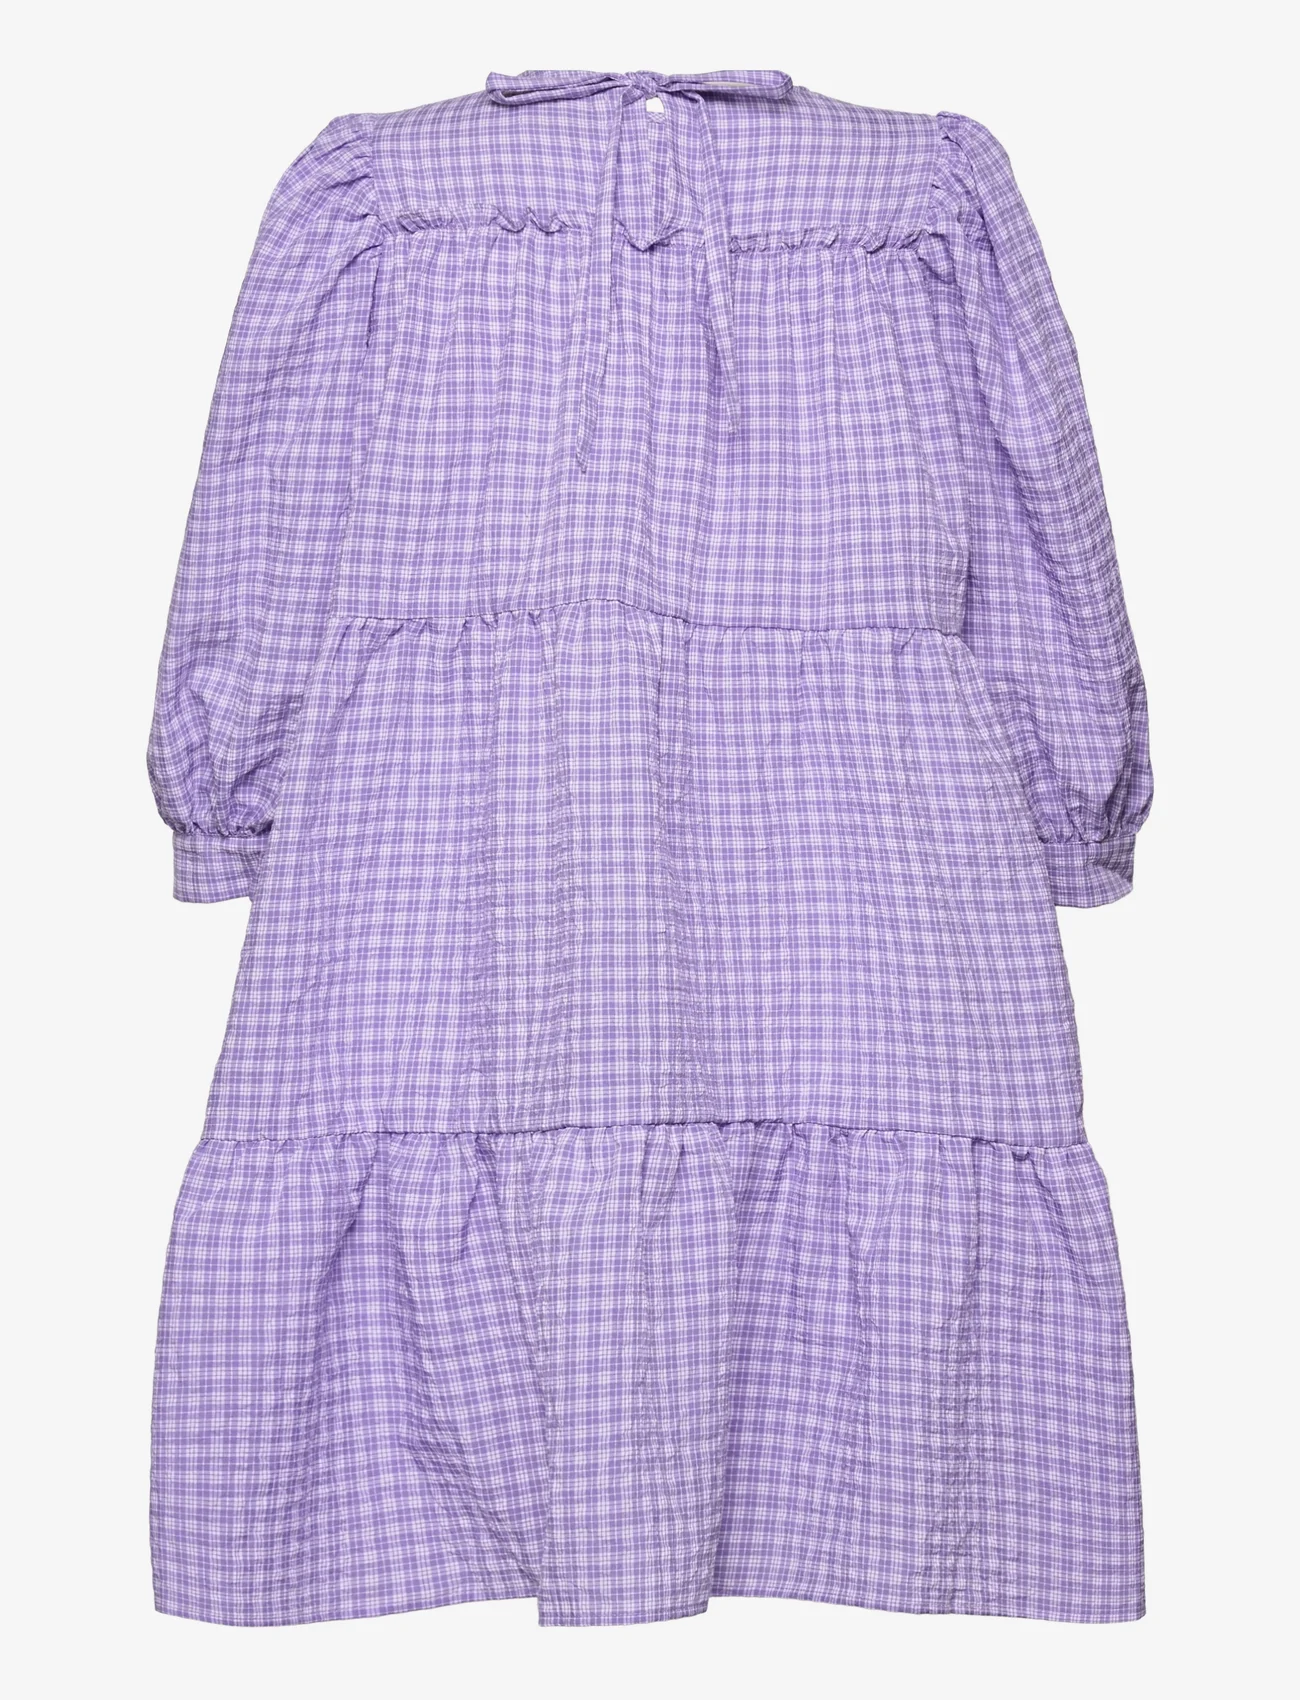 Minus - Rowen kjole - minikleidid - purple checked - 1